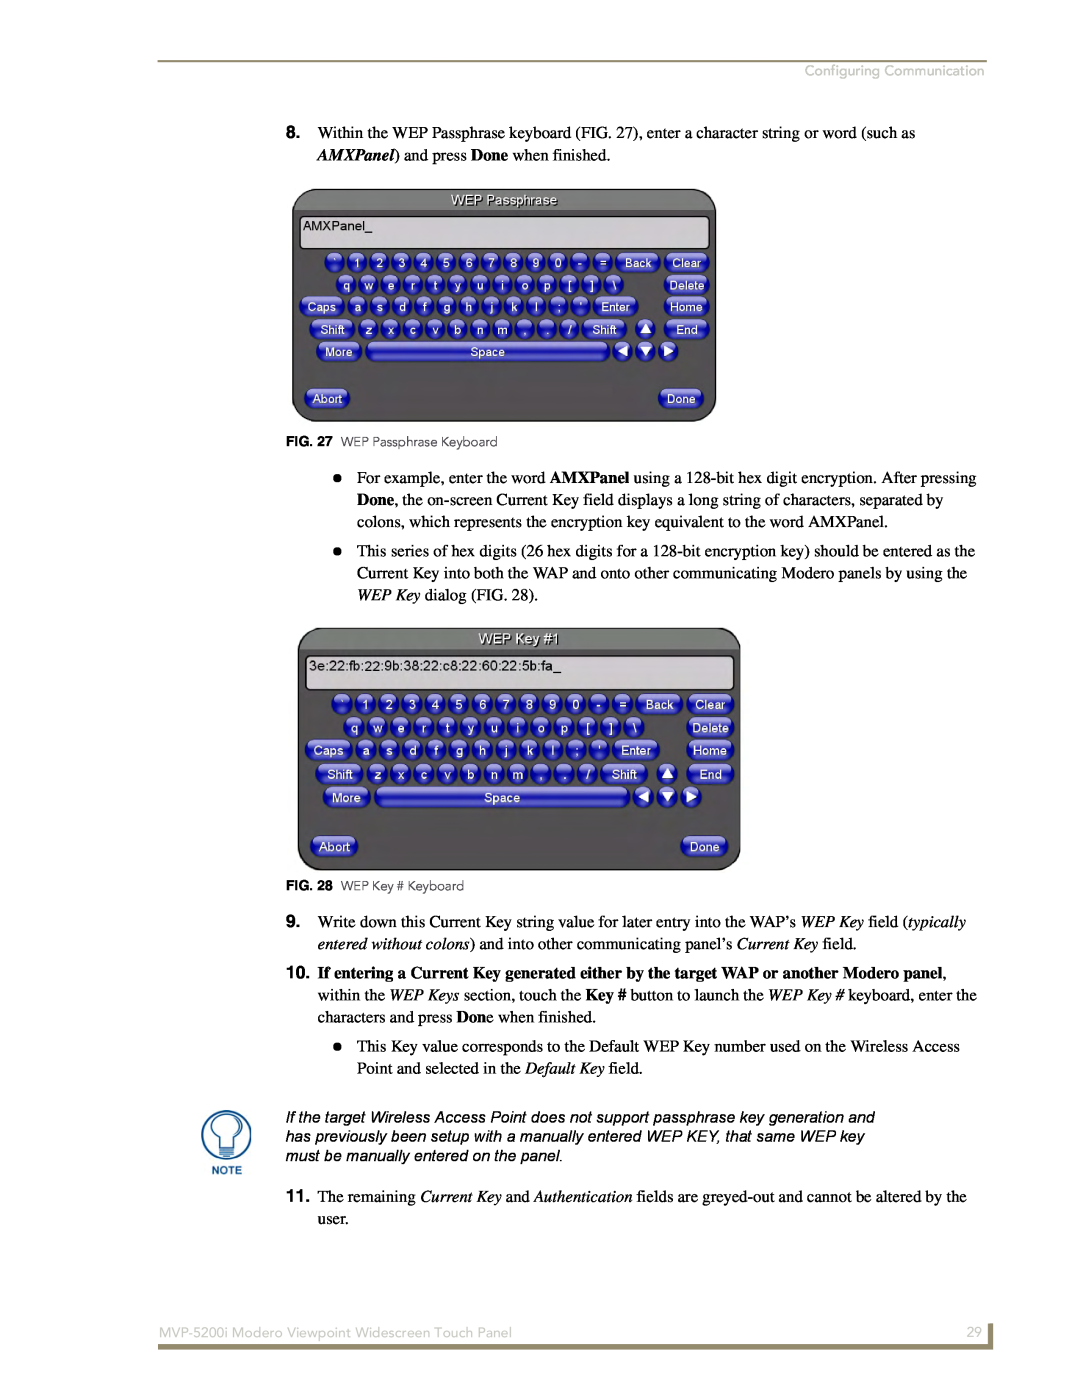 AMX MVP-5200i manual WEP Passphrase Keyboard, WEP Key # Keyboard 